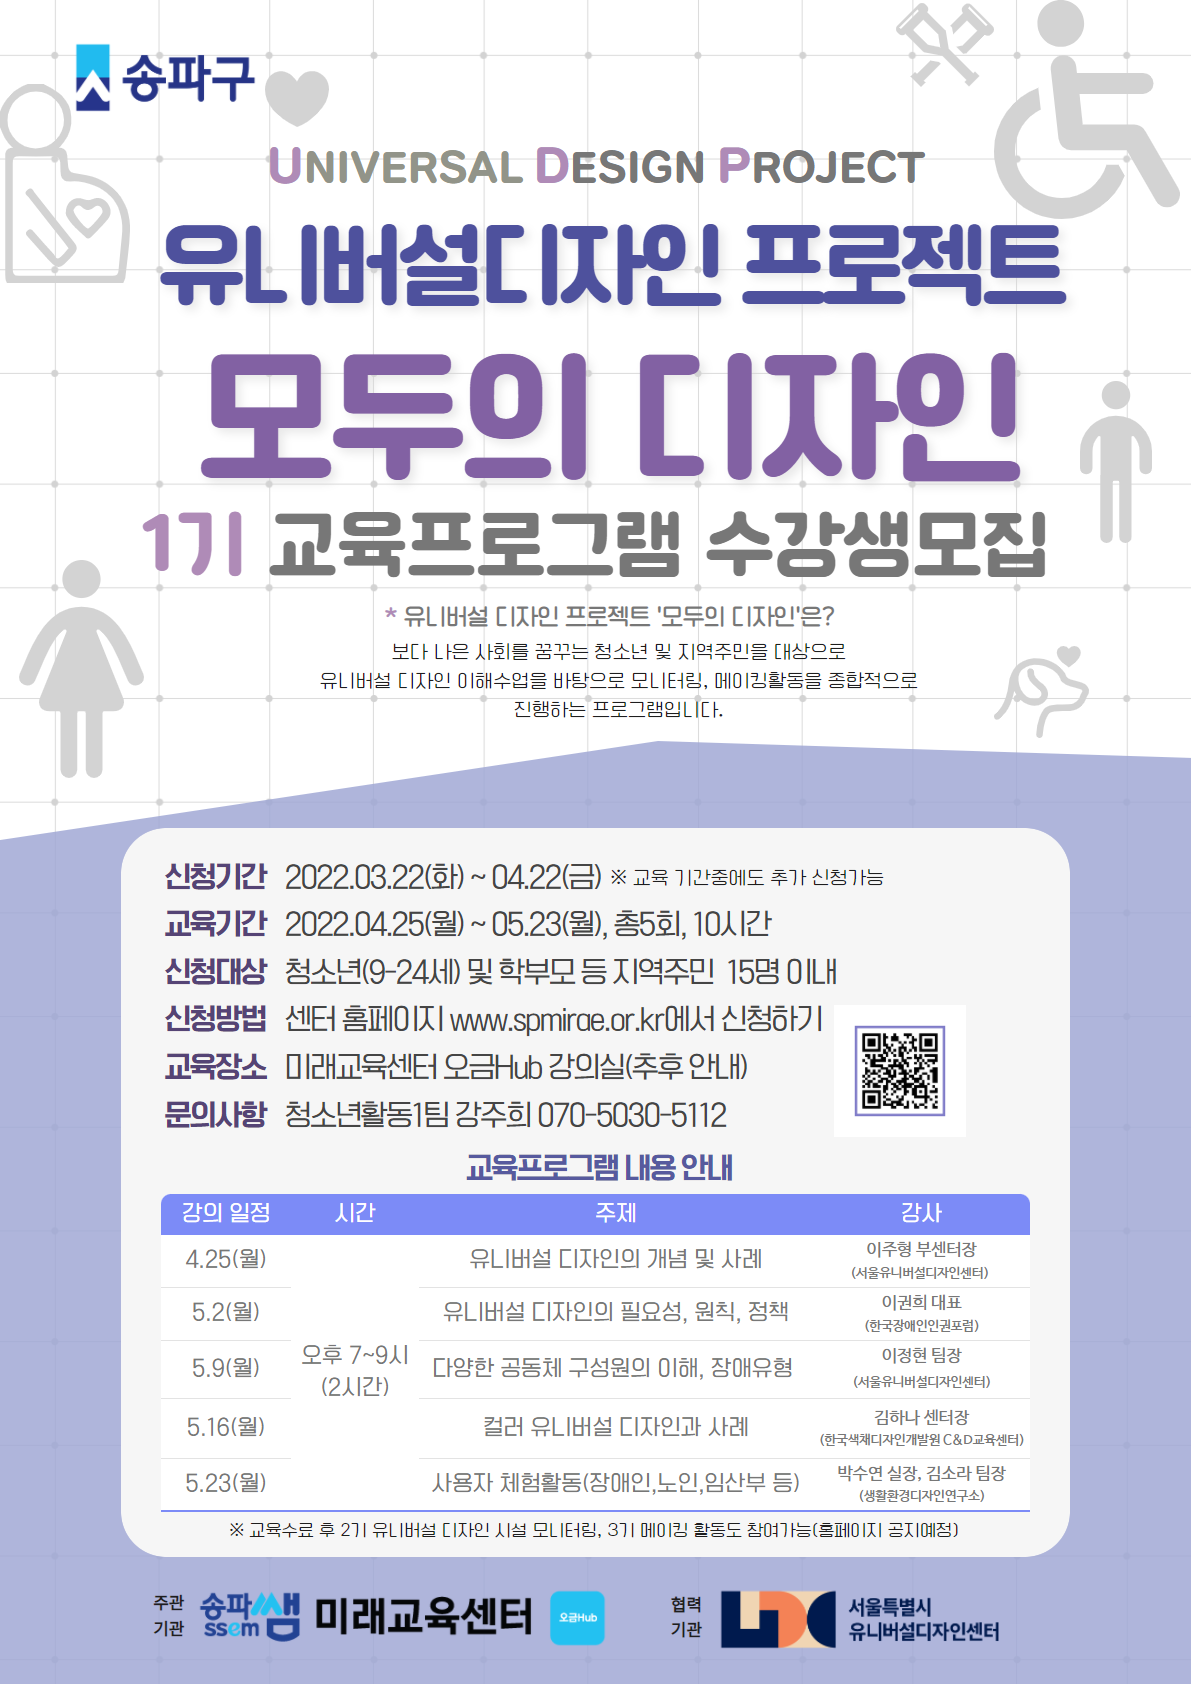 모두의디자인 1기 홍보 포스터
송파구 미래교육센터 유니버설디자인 프로젝트